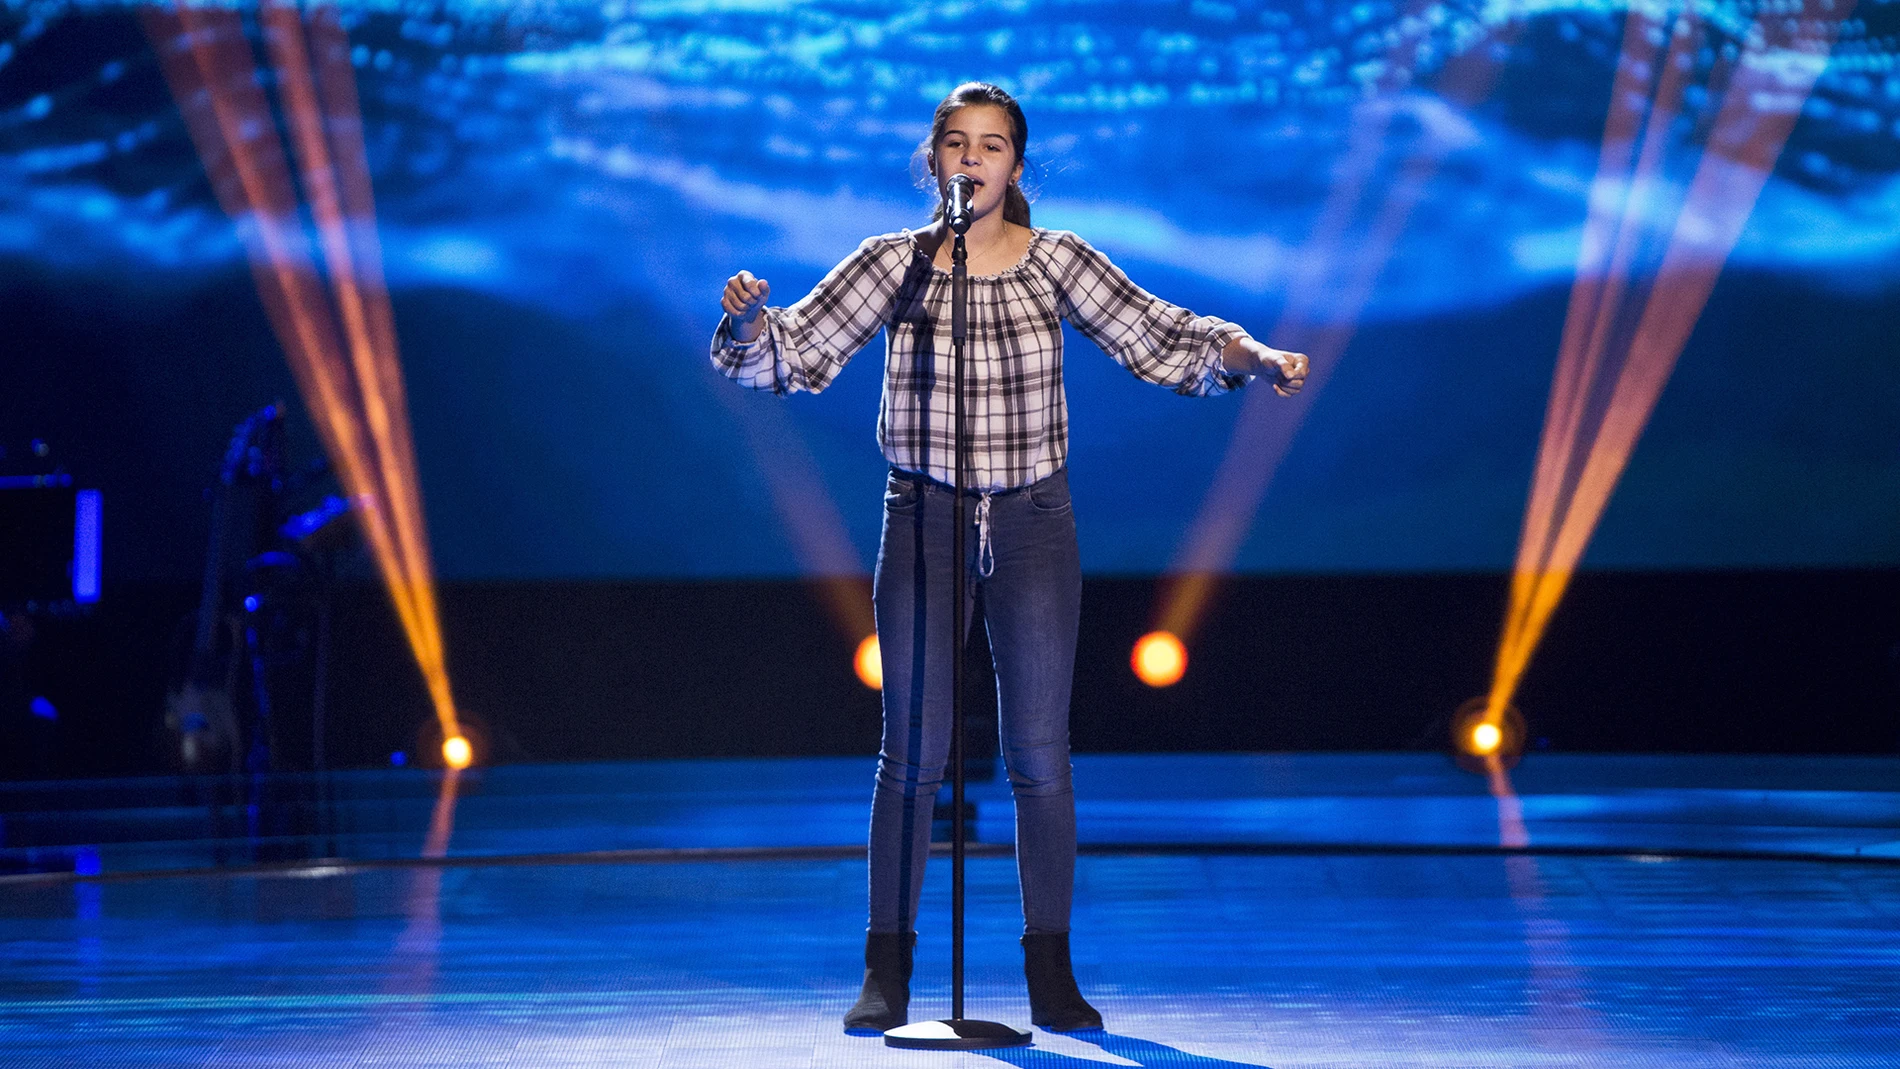 Victoria Herraiz canta ‘Don’t rain on my parade’ en las Audiciones a ciegas de ‘La Voz Kids’